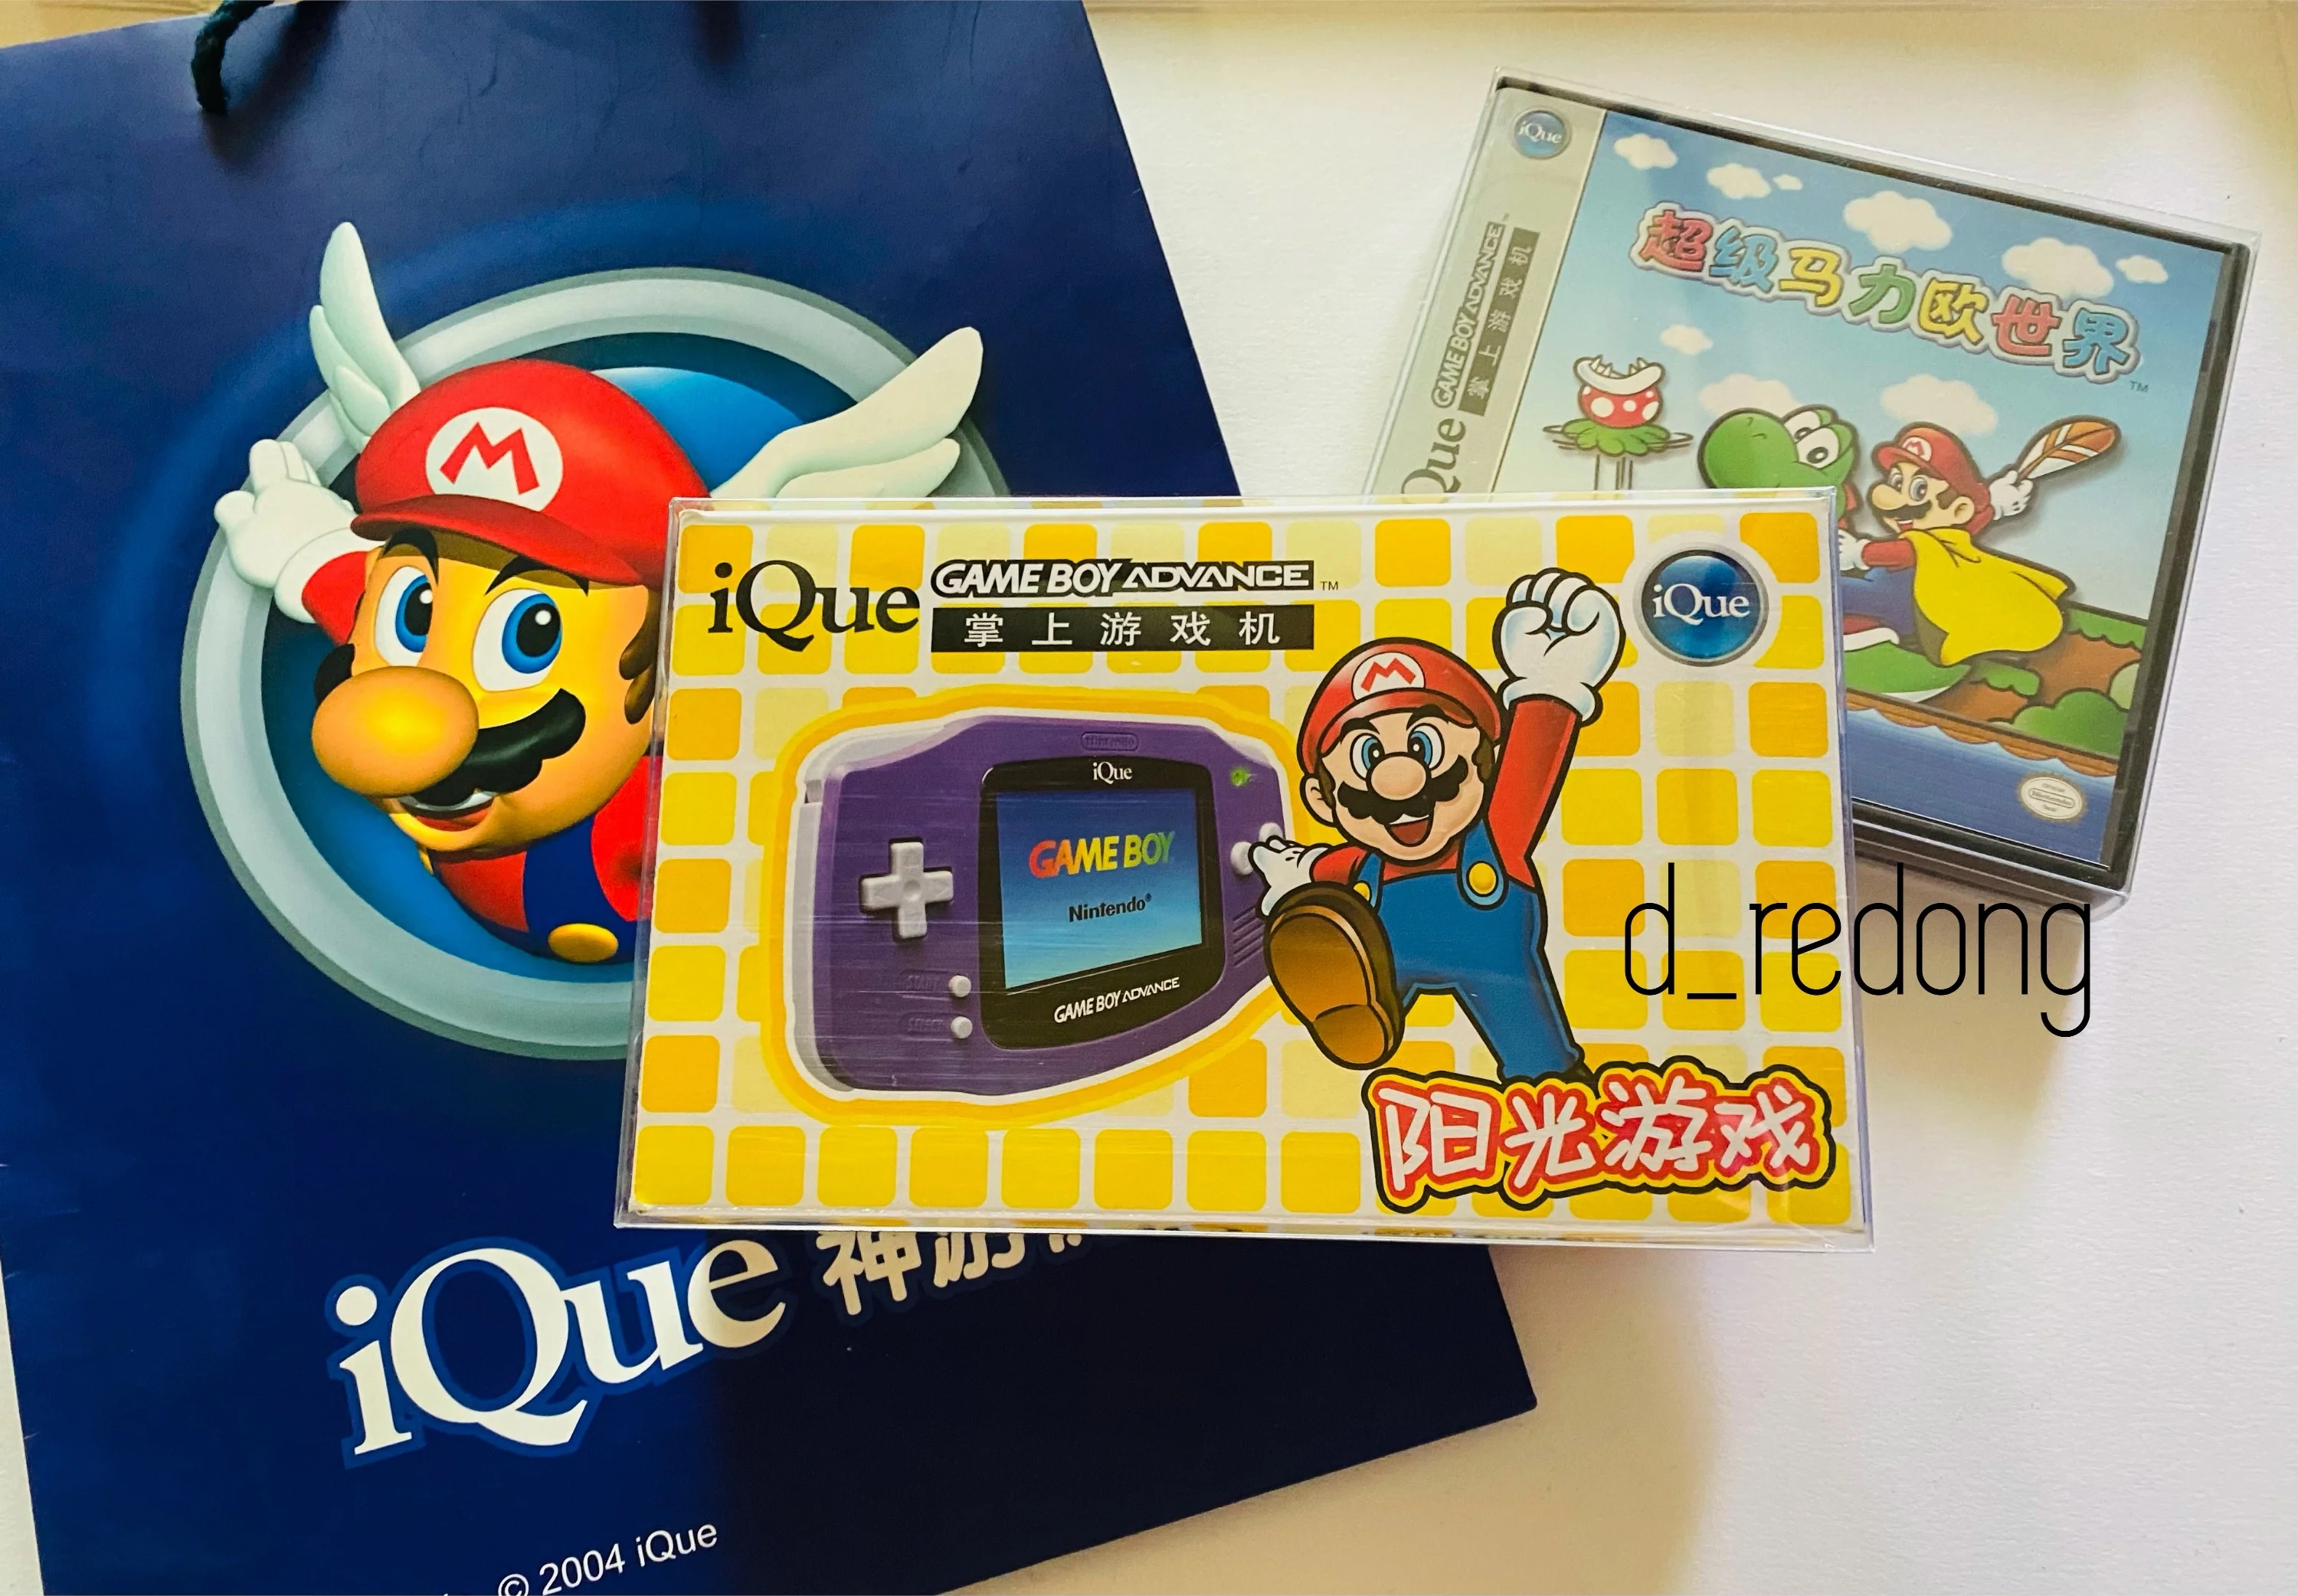  iQue Game Boy Advance Super Mario 2 Bundle